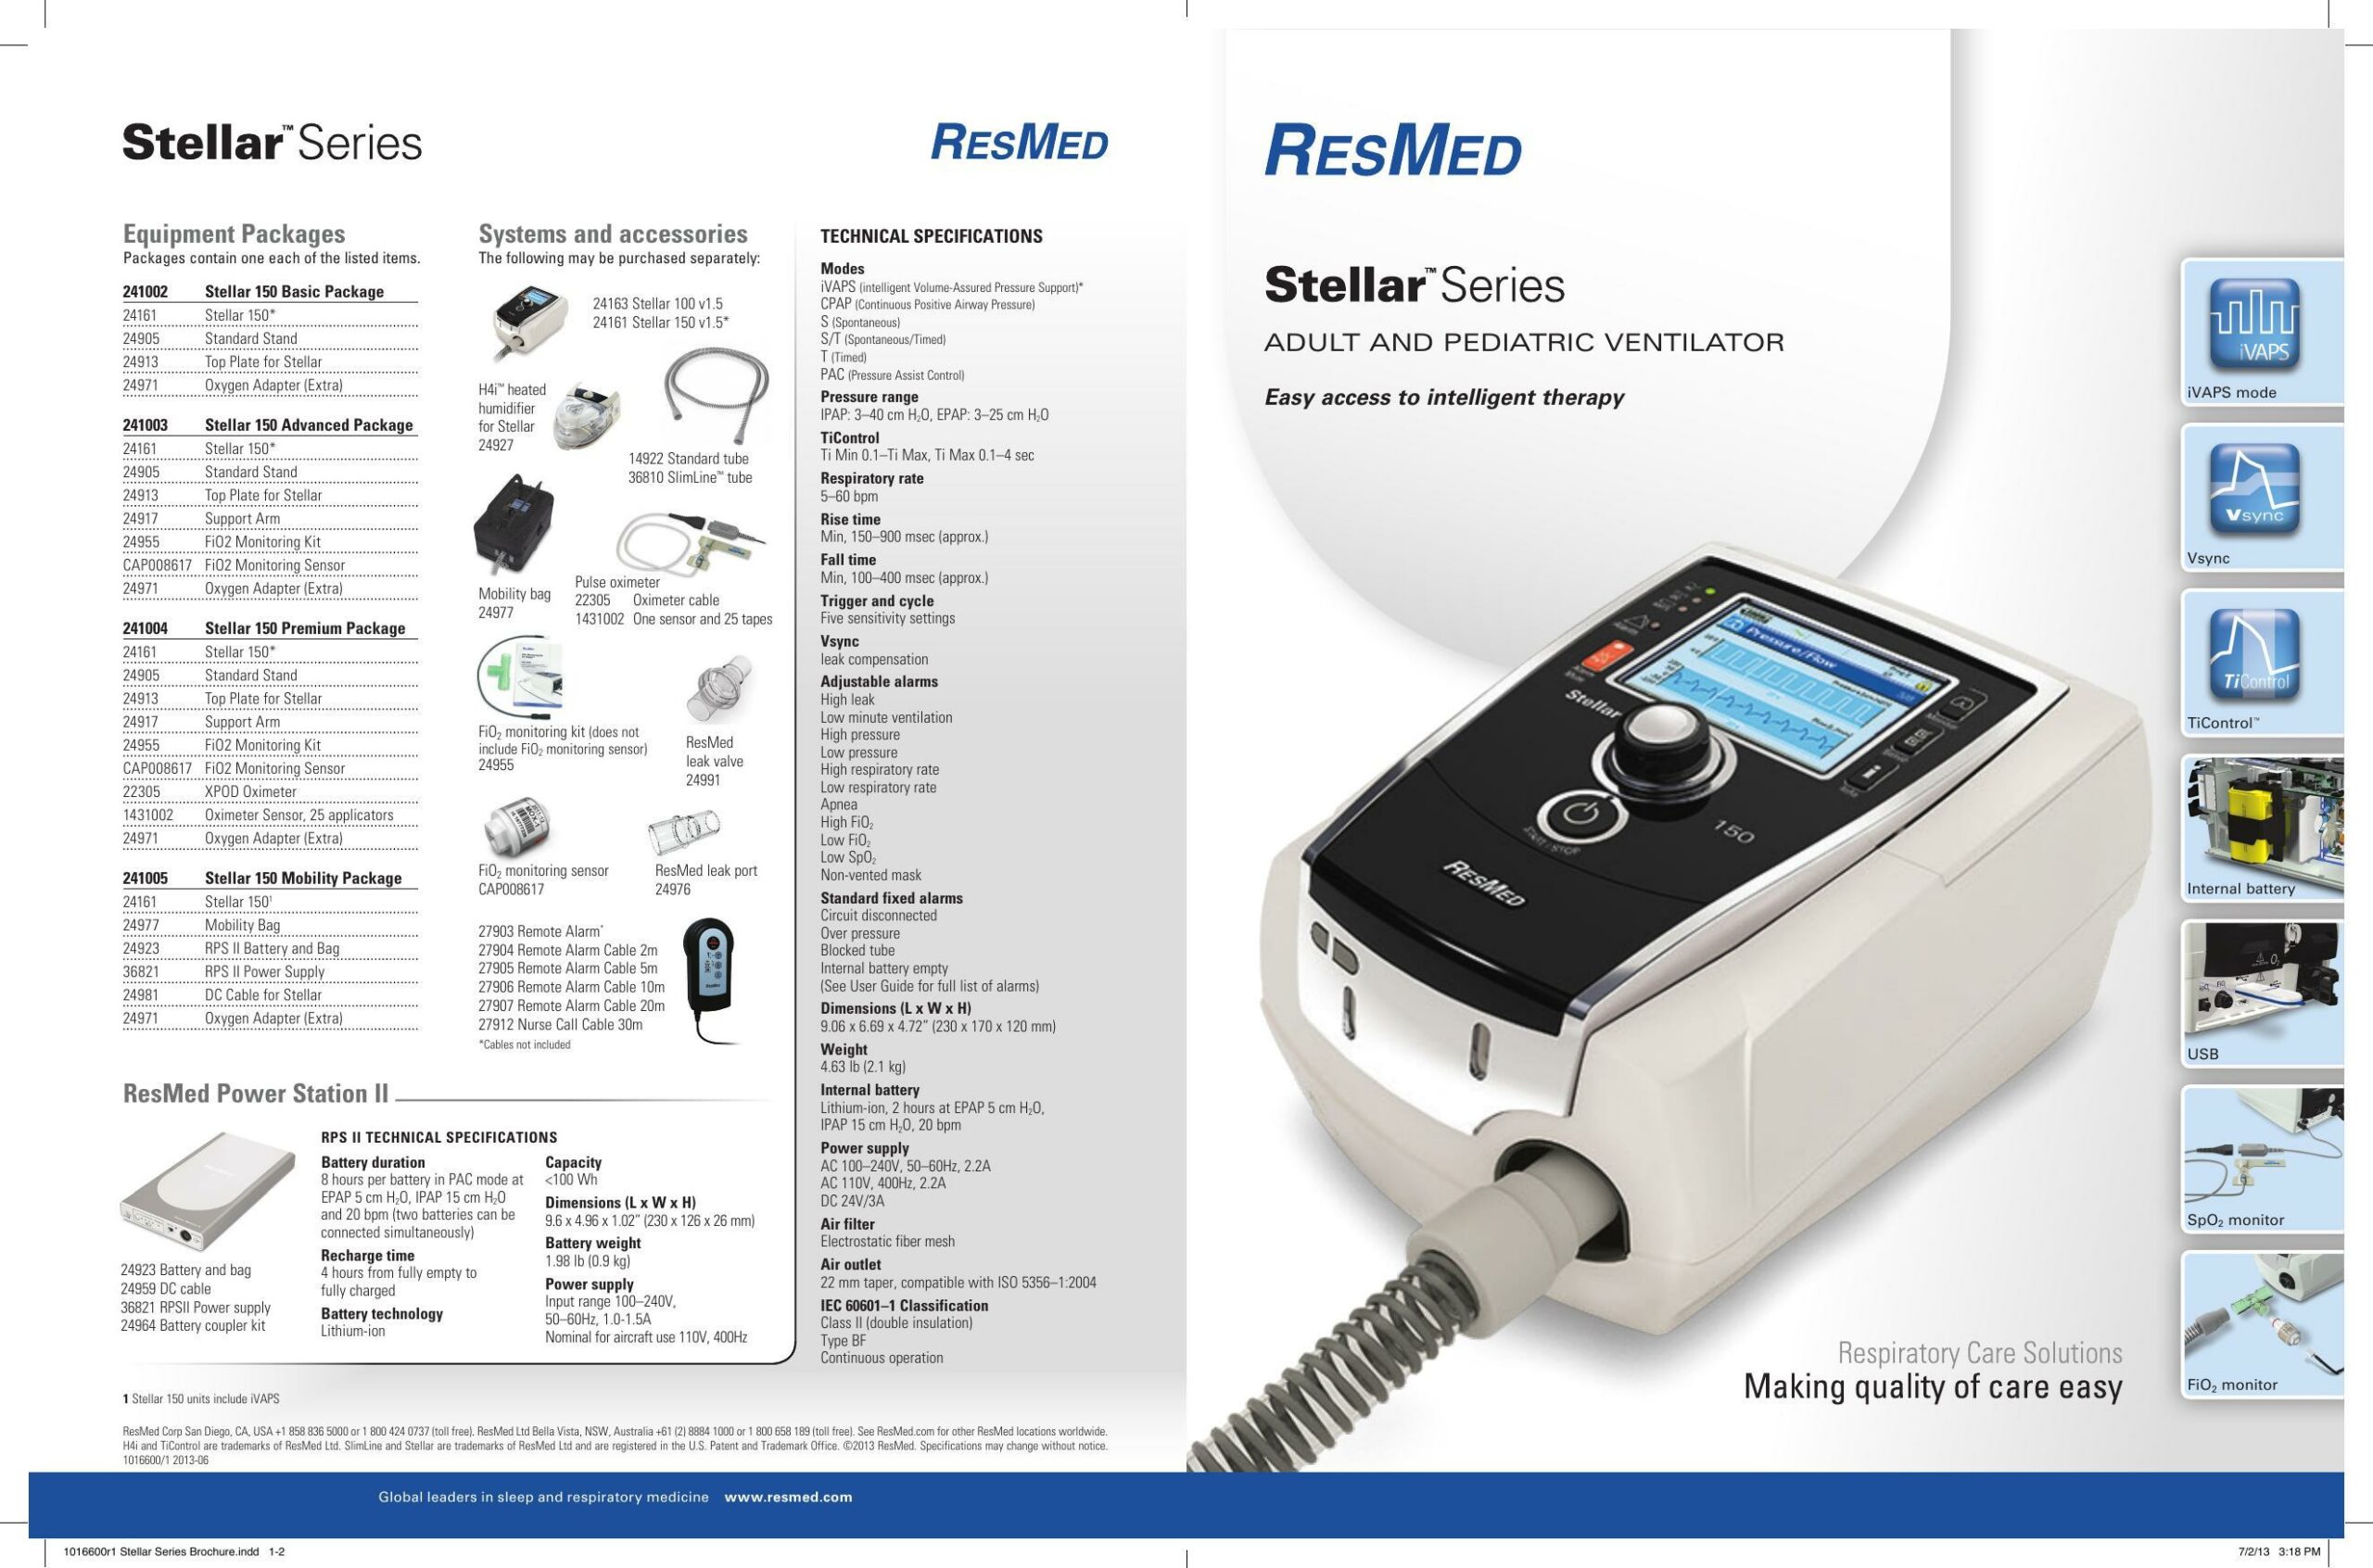 stellar-series-adult-and-pediatric-ventilator-user-manual.pdf